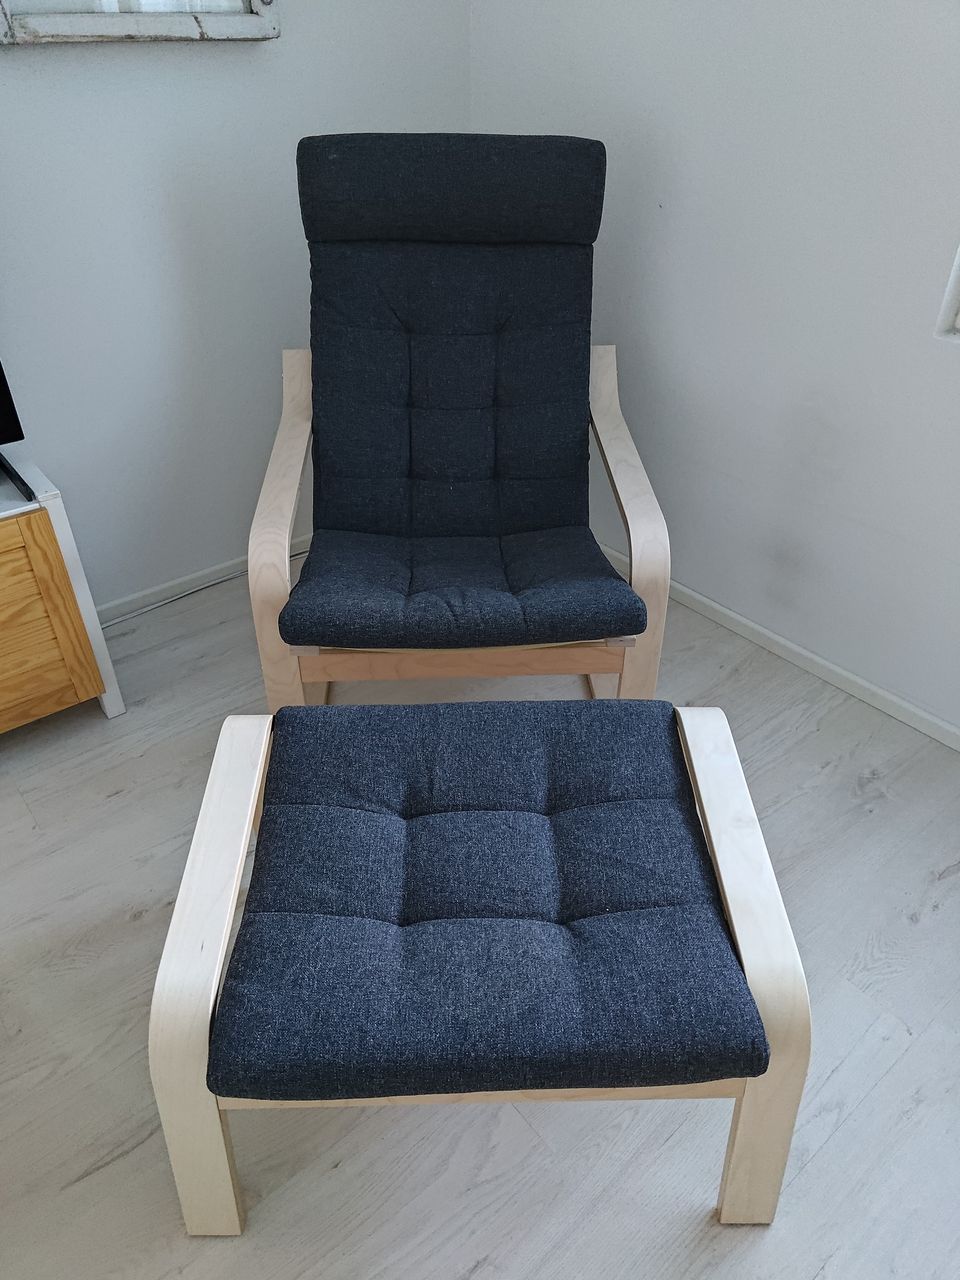 Ikea Pöang nojatuoli ja rahi - käyttämätön